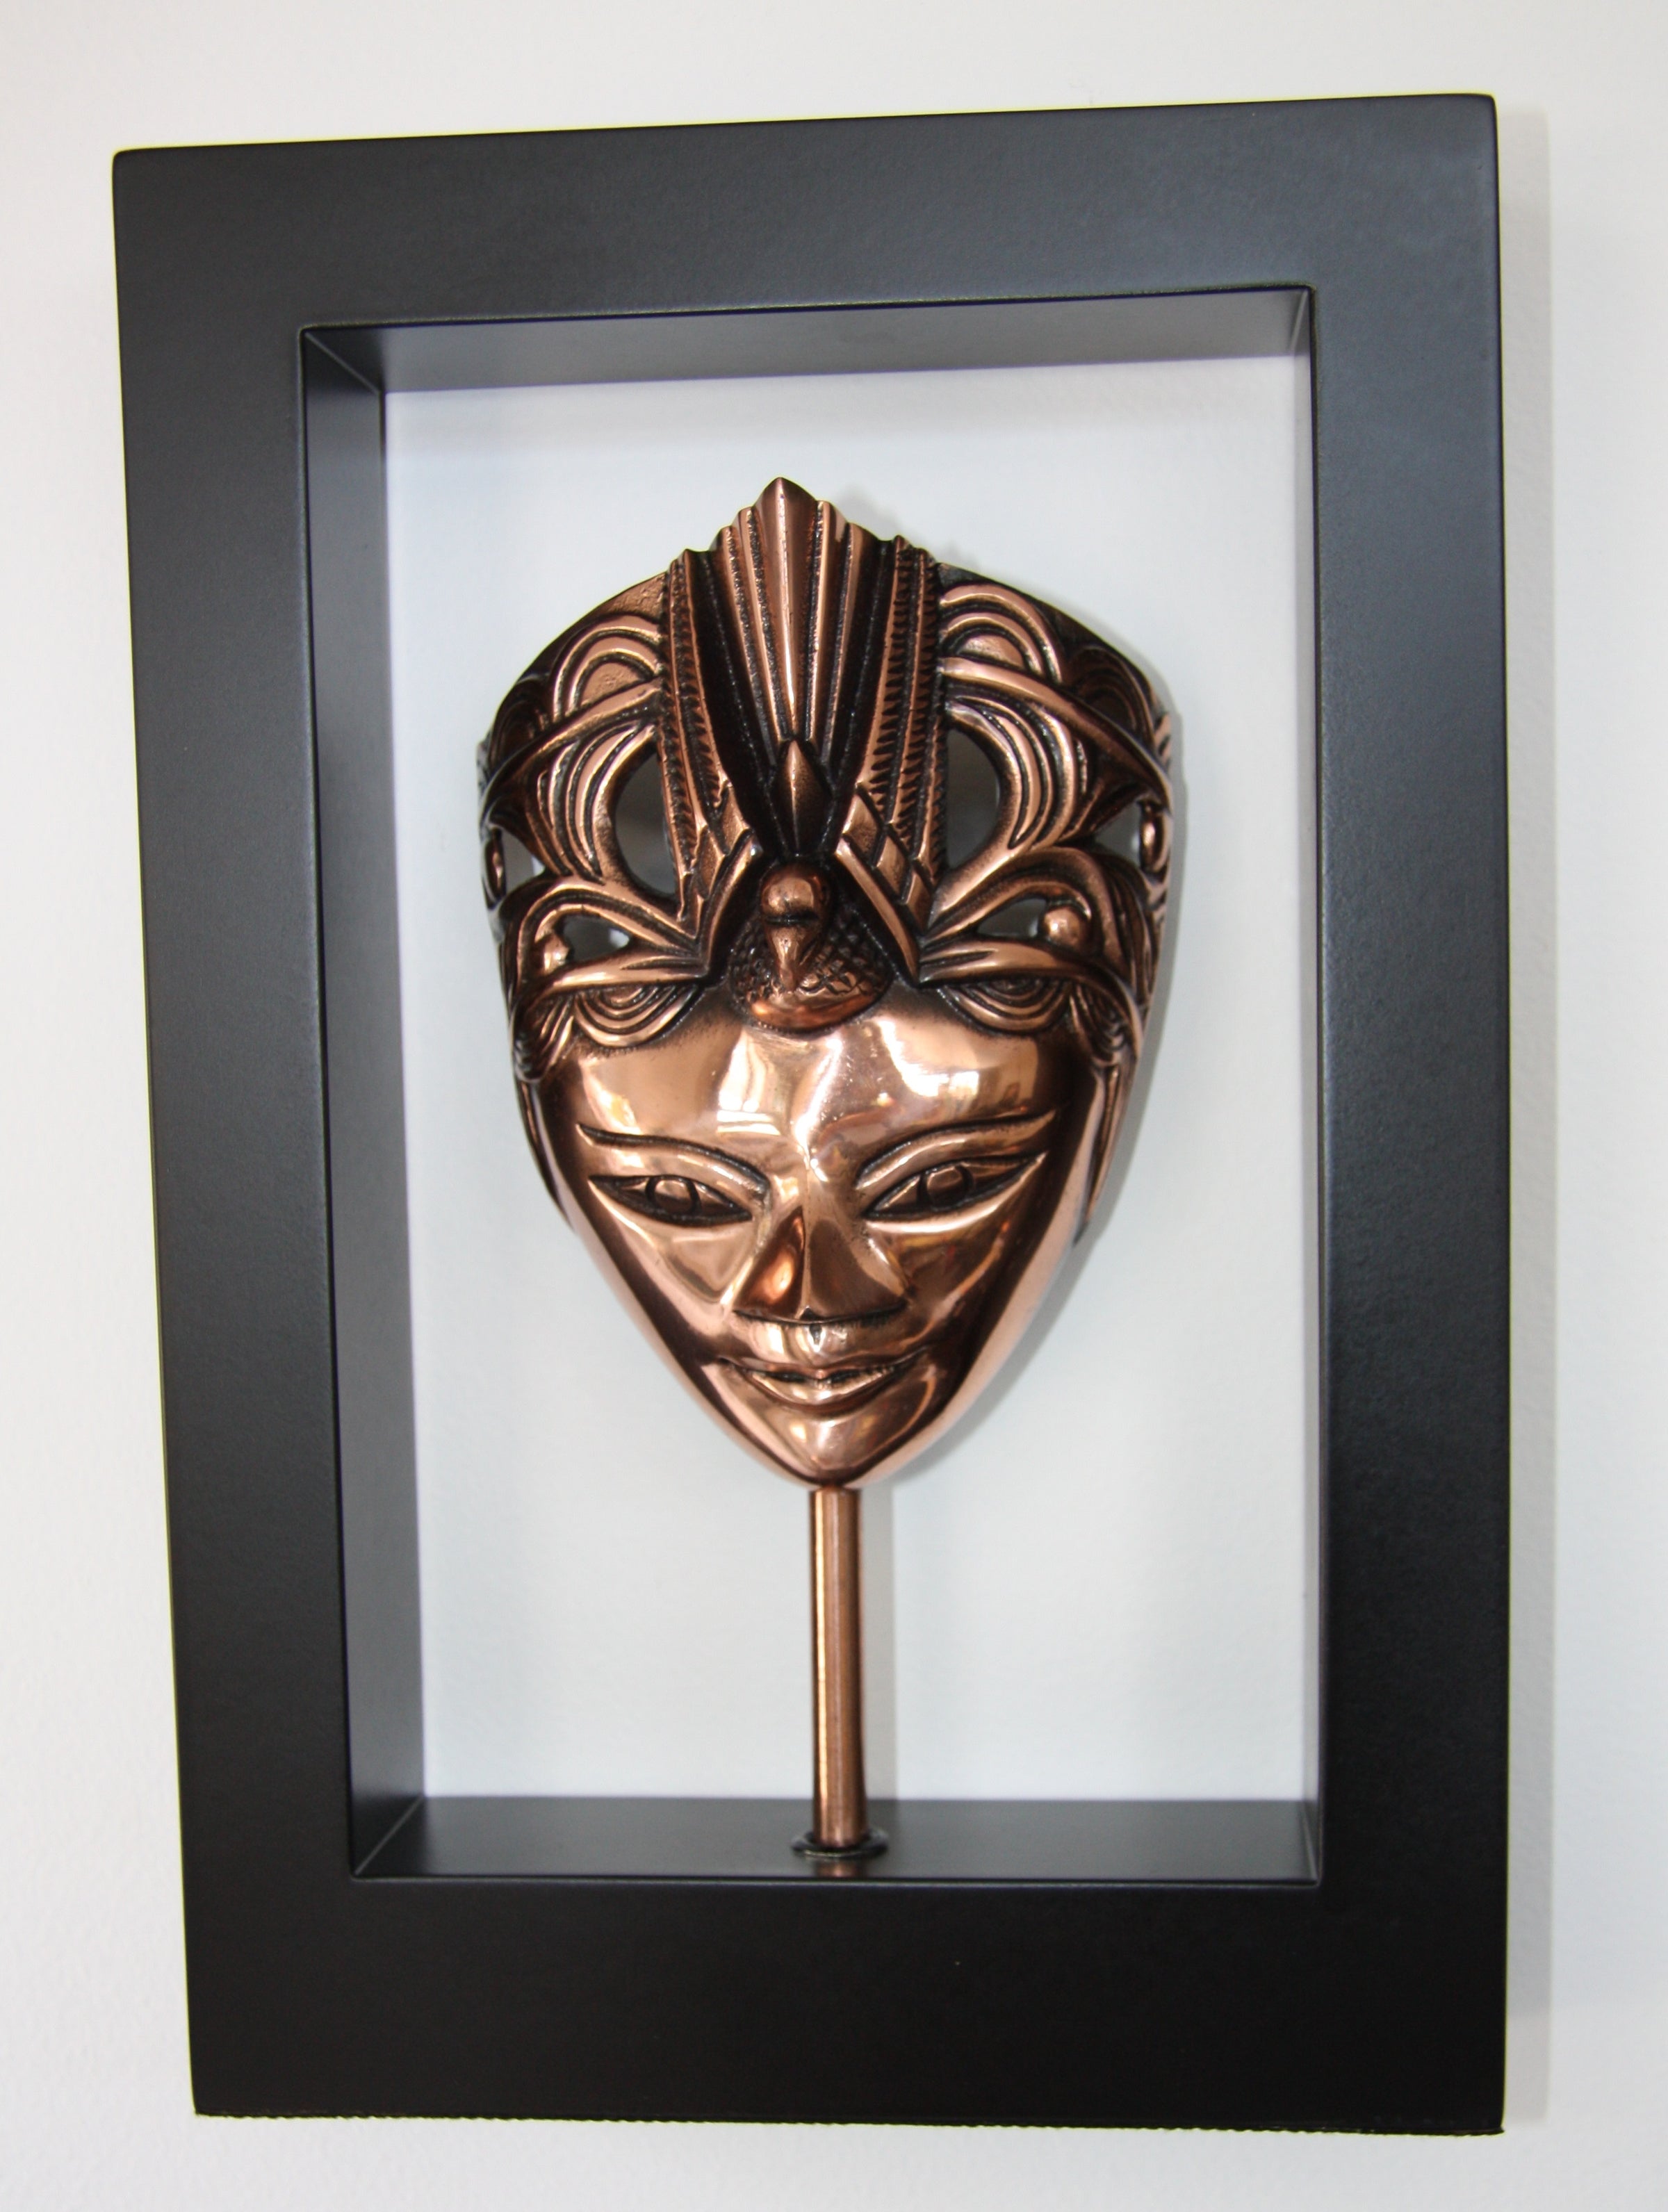 Wanita Mask in Wooden Frame